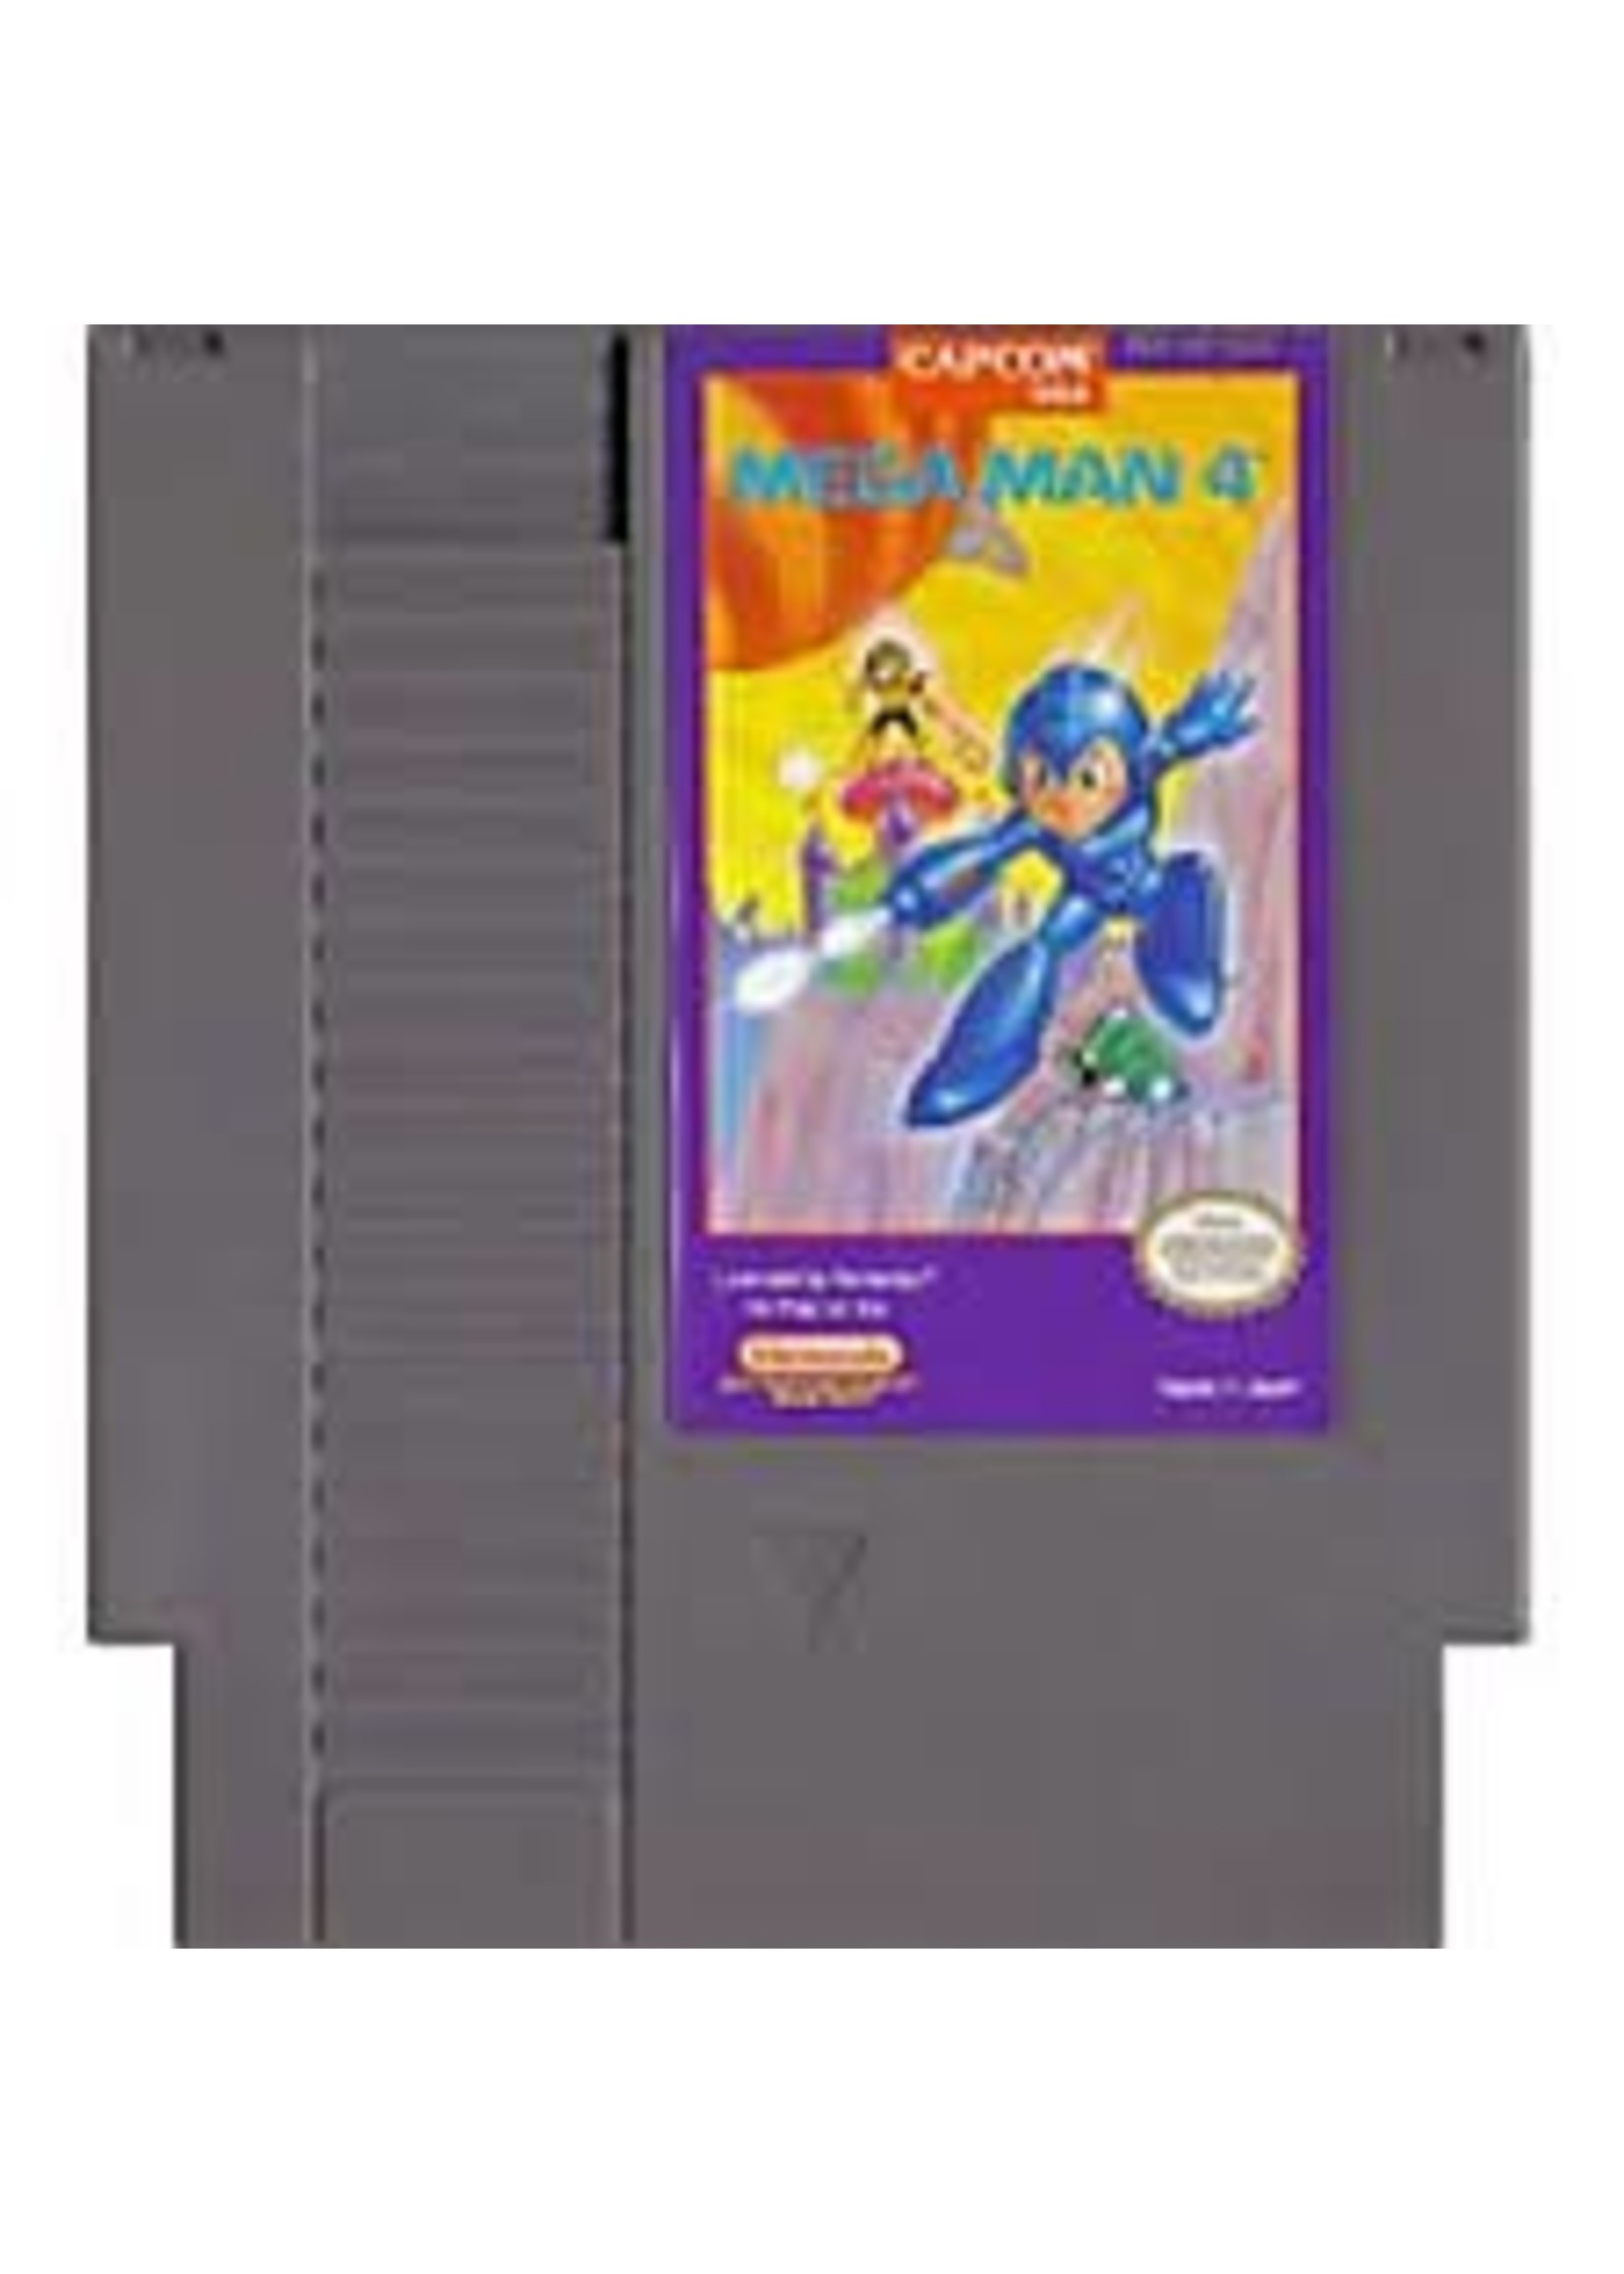 Nintendo (NES) Mega Man 4